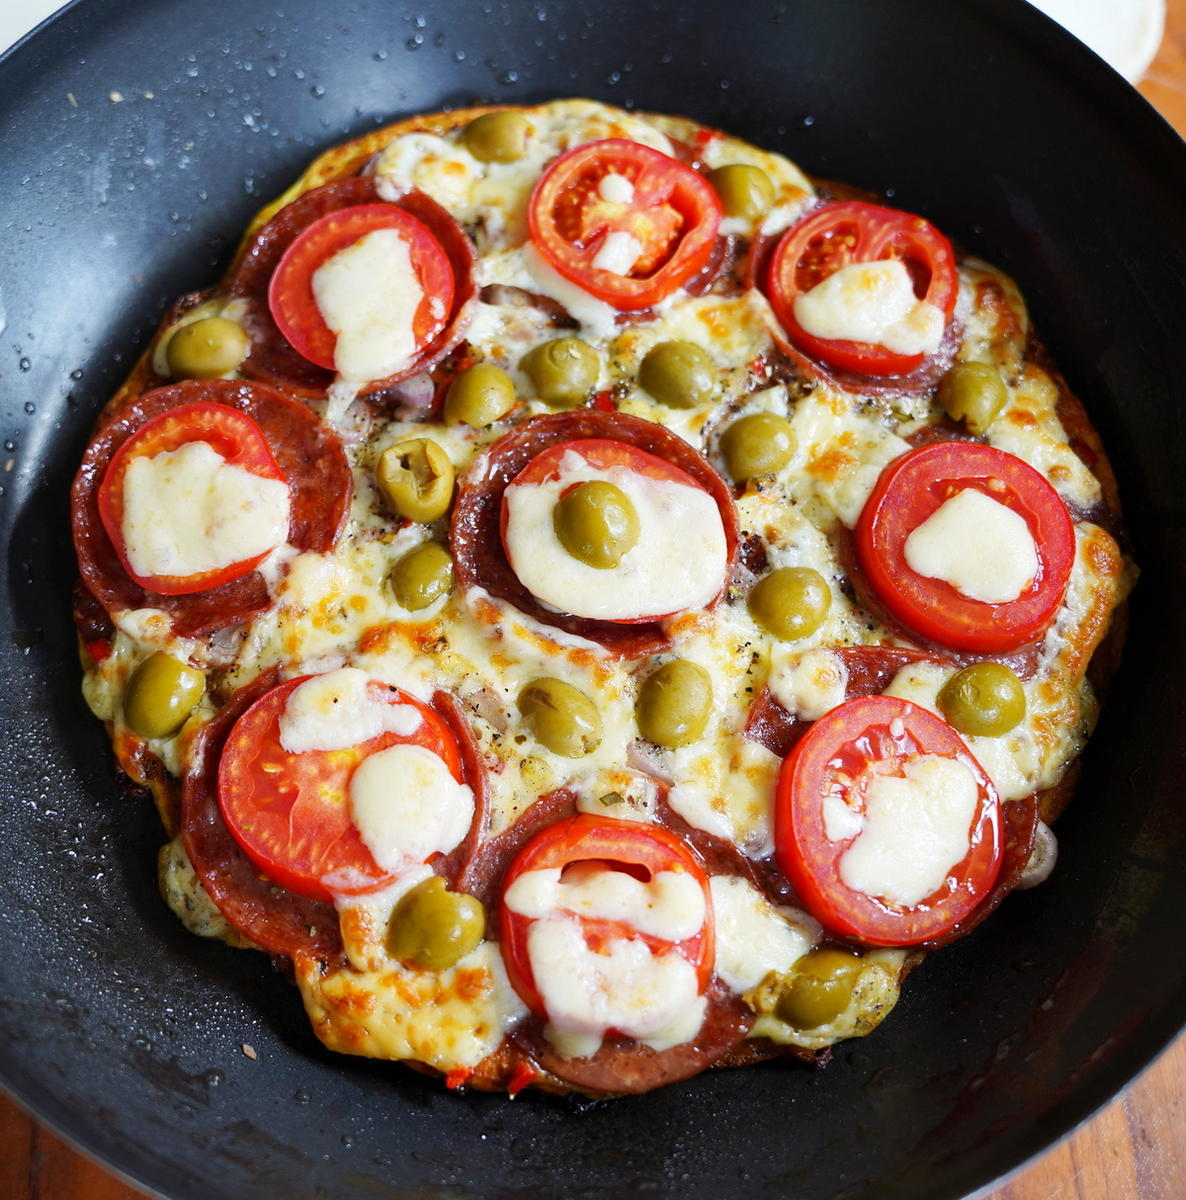 Pfannenpizza mit Eselsalami und grünen Oliven - Rezept - Bild Nr. 2